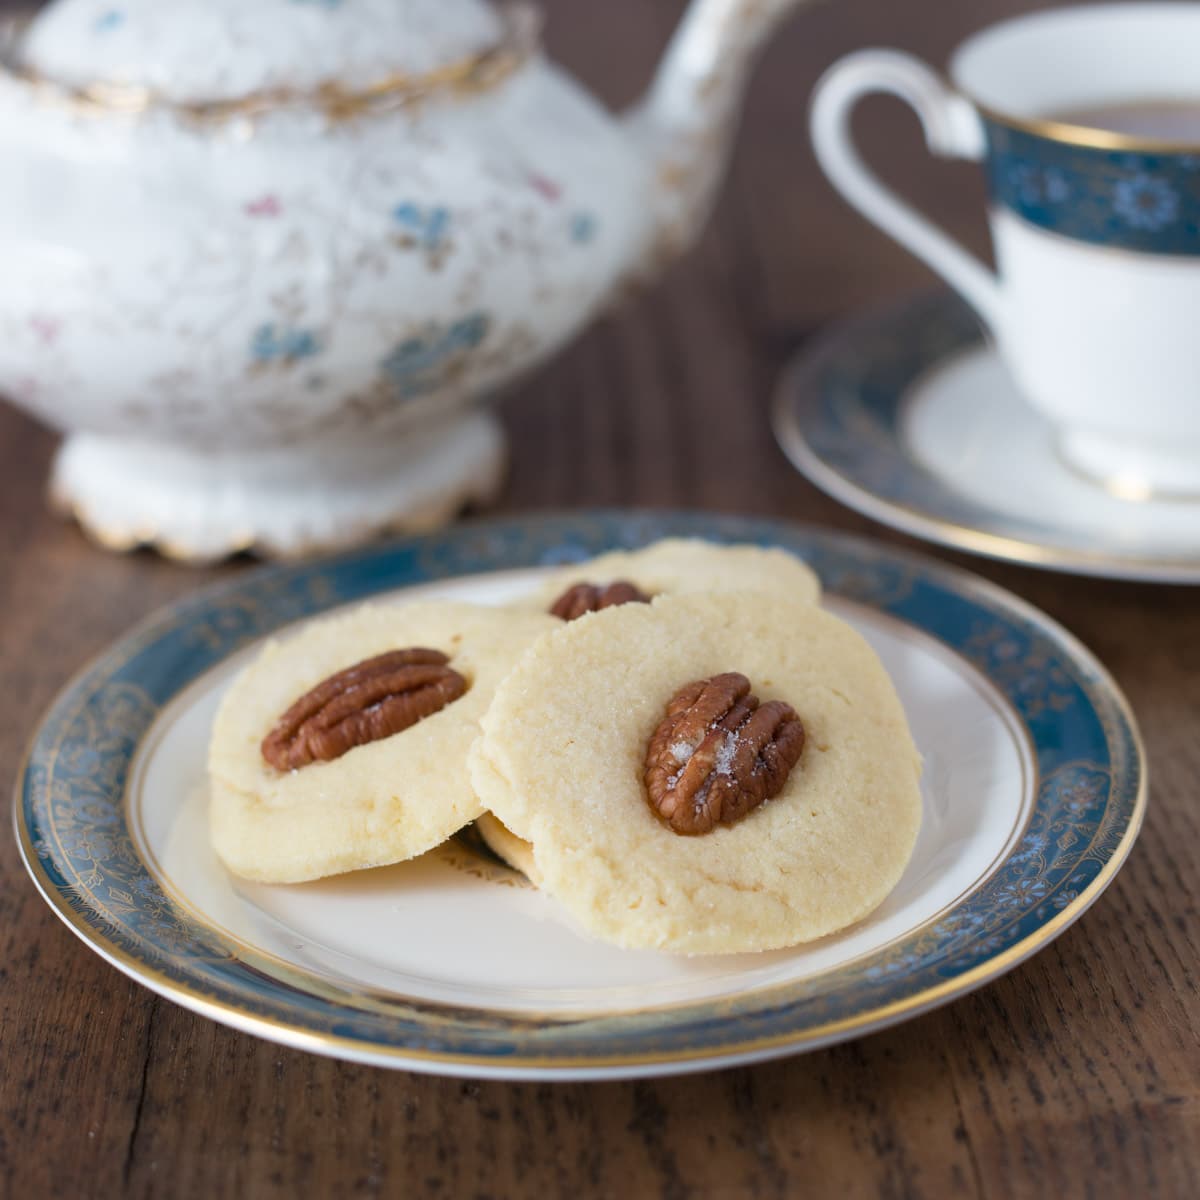 https://ethnicspoon.com/wp-content/uploads/2019/02/irish-butter-cookies-sq.jpg